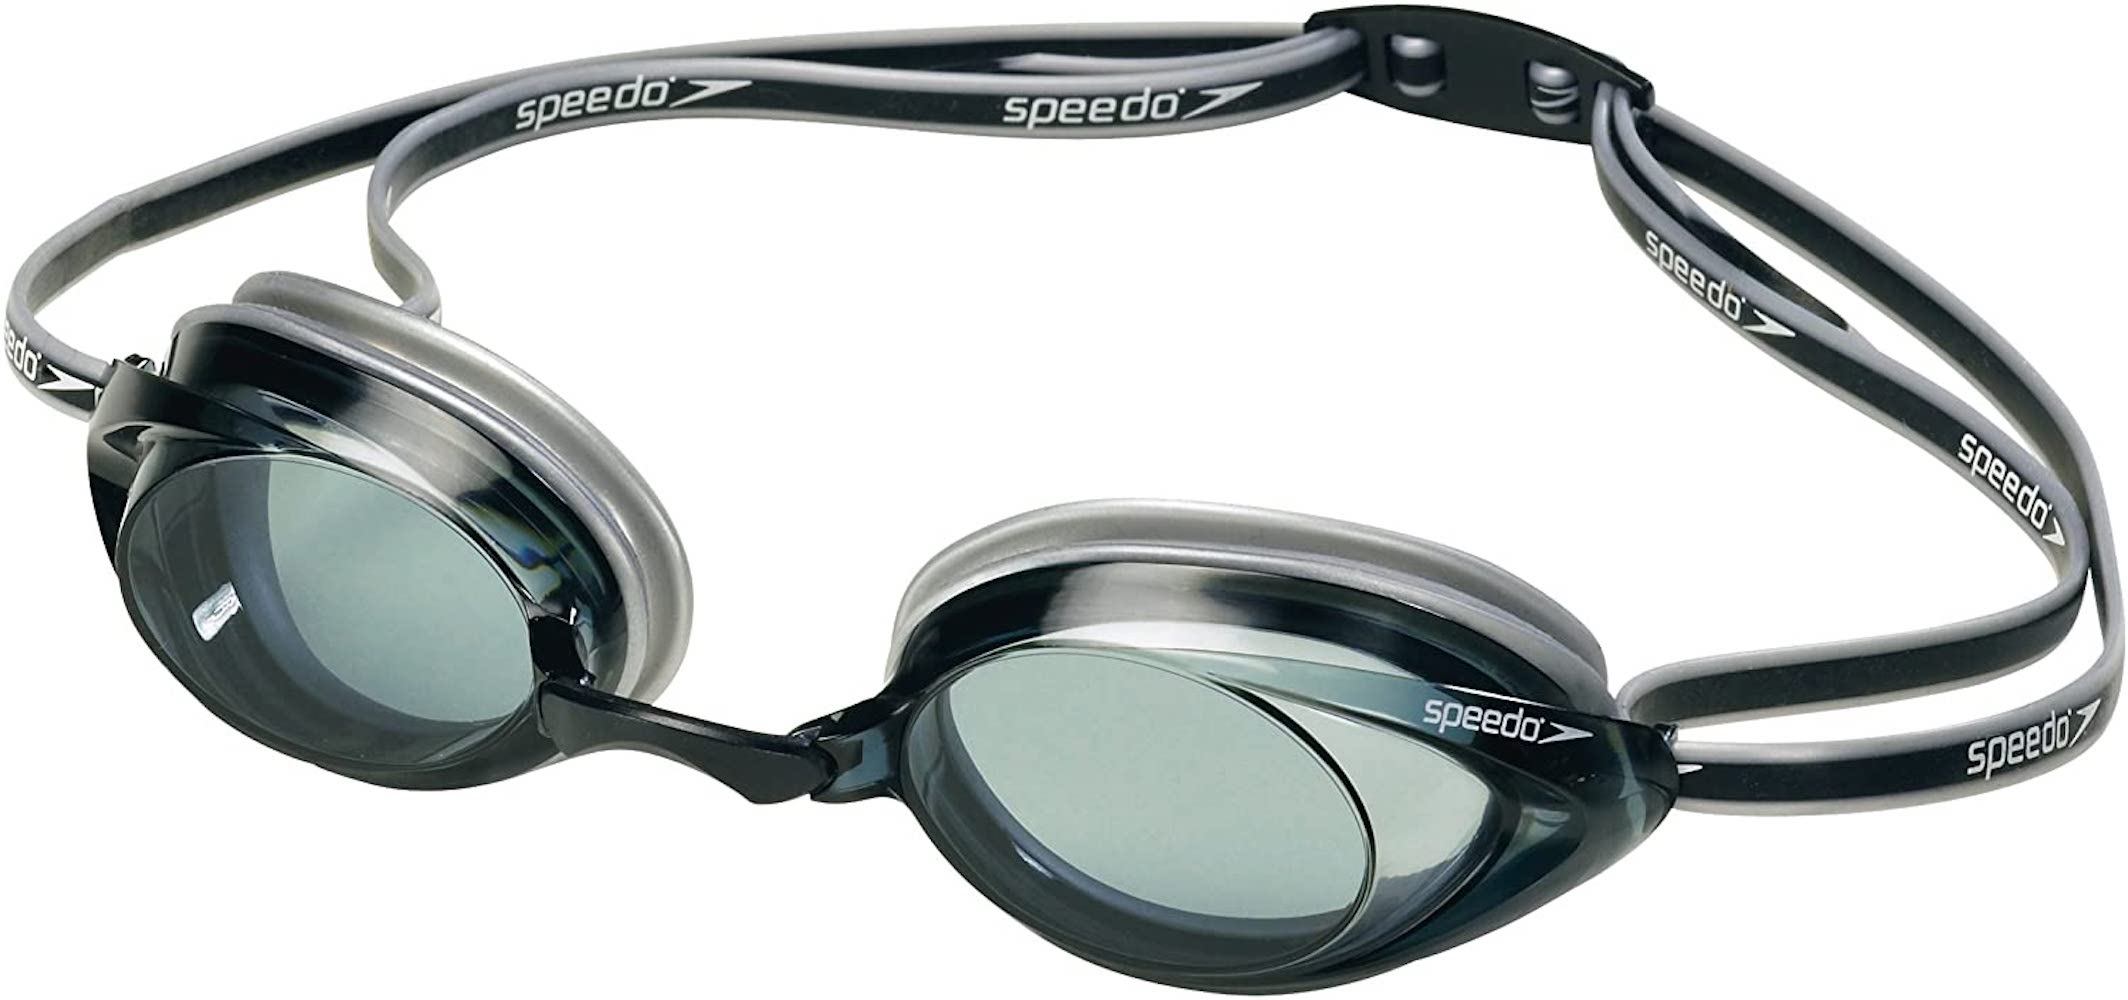 Speedo swim goggles